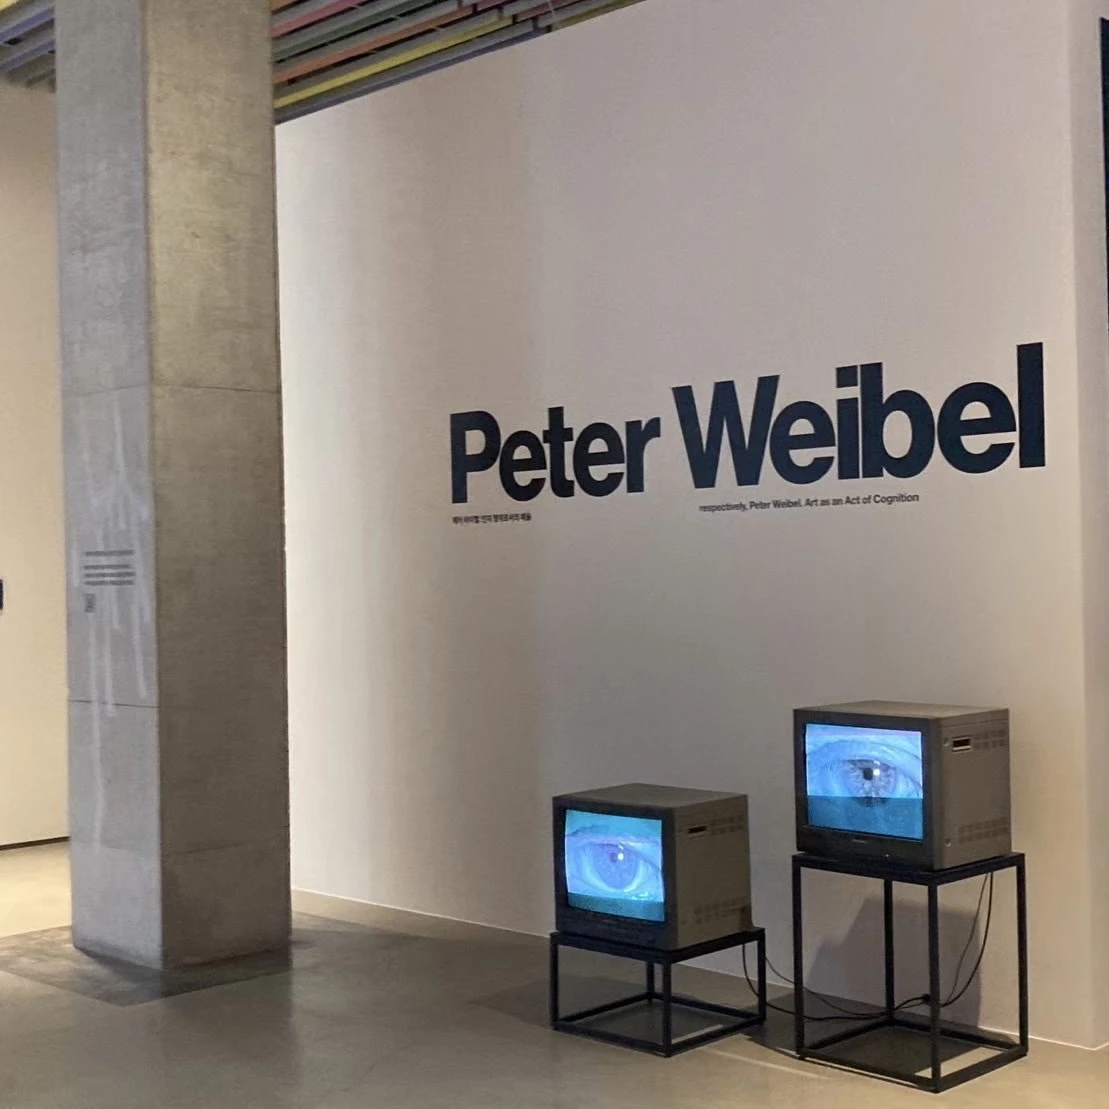 「Peter Weibel」の展示